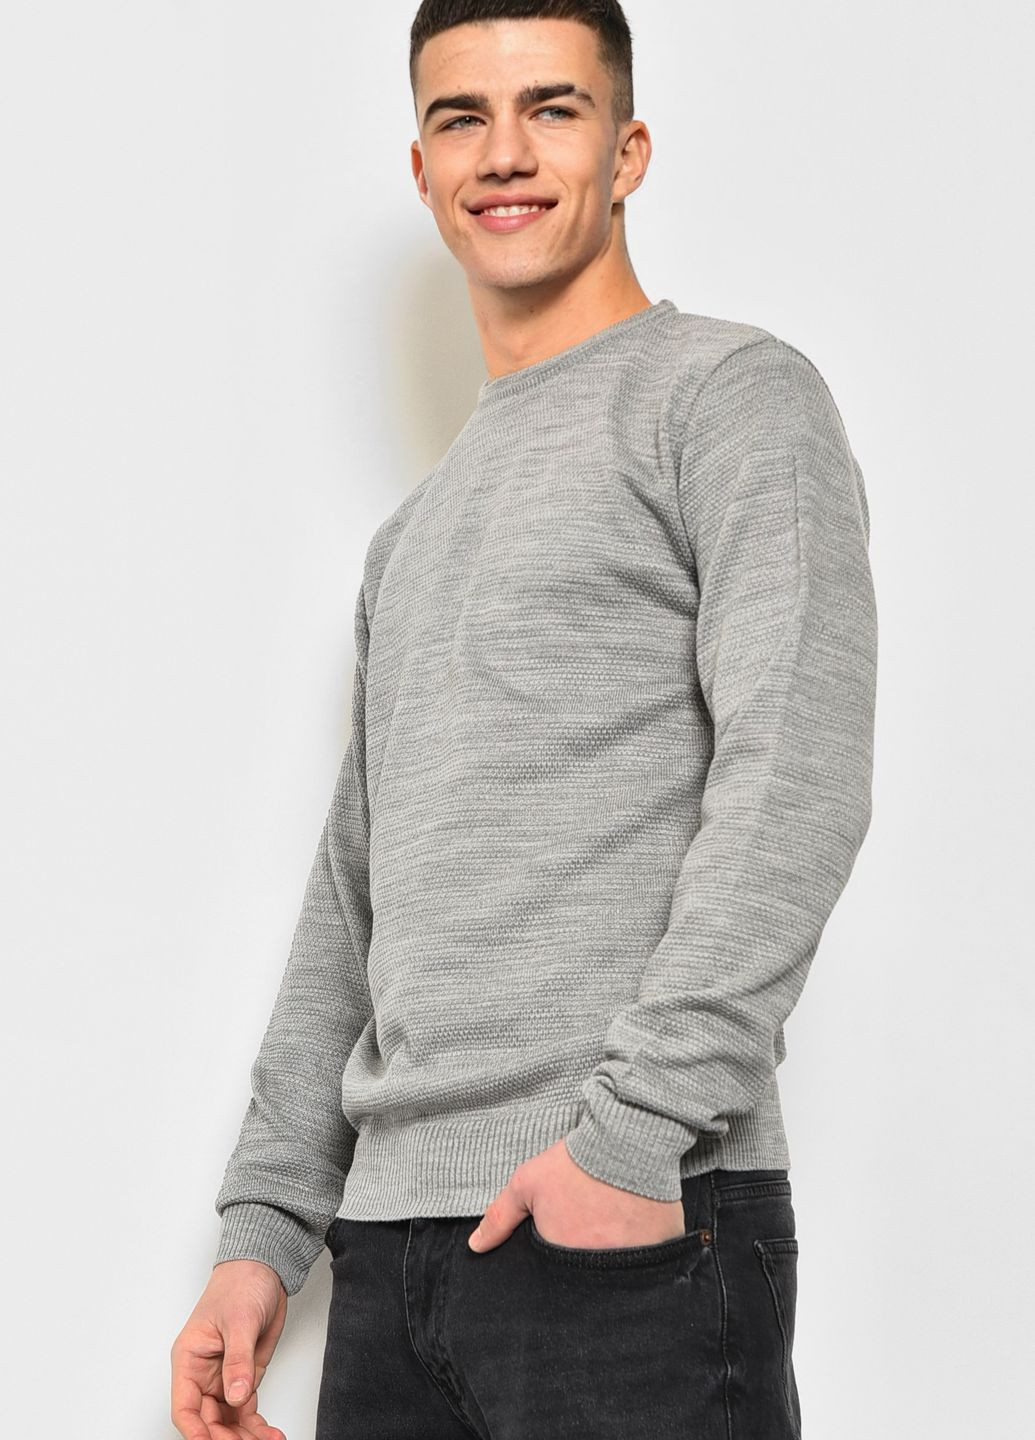 Серый демисезонный свитер мужской серого цвета пуловер Let's Shop